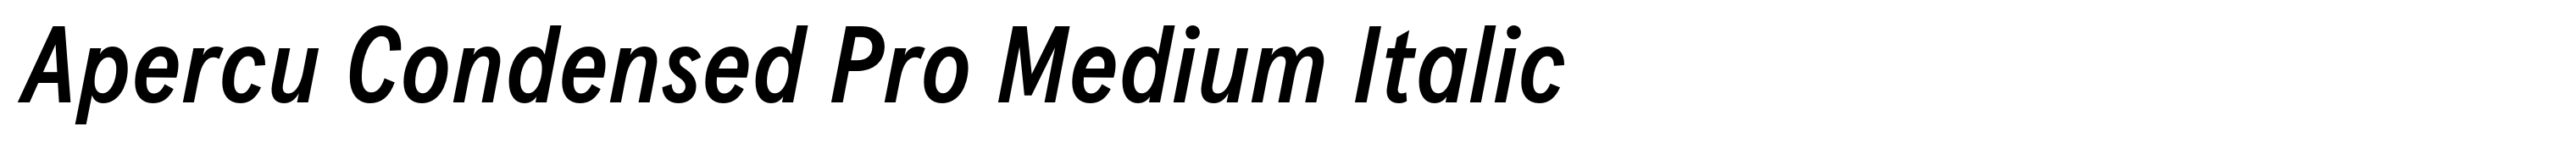 Apercu Condensed Pro Medium Italic